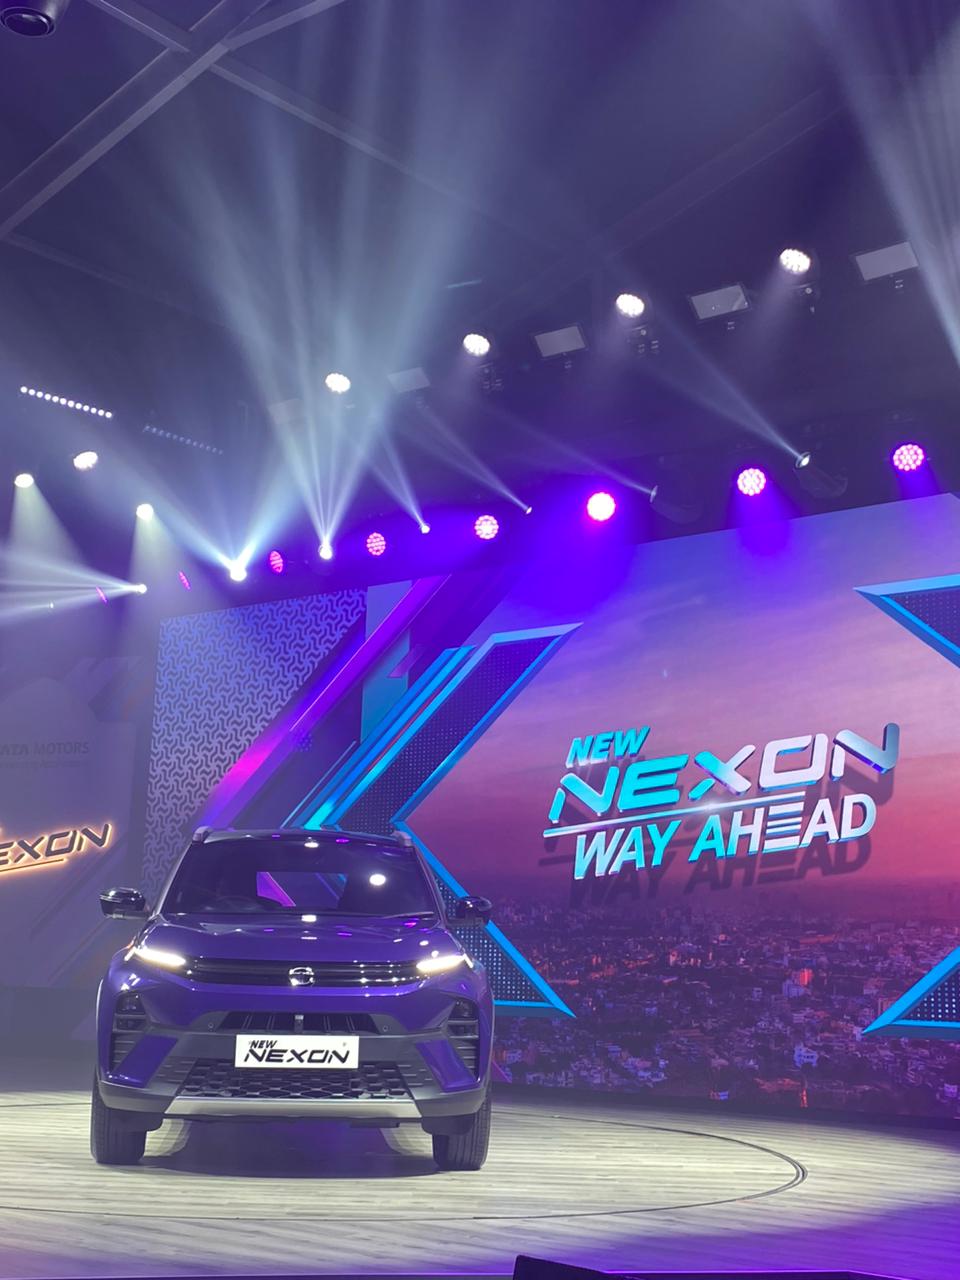 टाटा ने अपनी Nexon Facelift 2023 से हटाया पर्दा, जान लीजिये, किन खूबियों से लैस है ये एसयूवी और किससे लेगी पंगा?